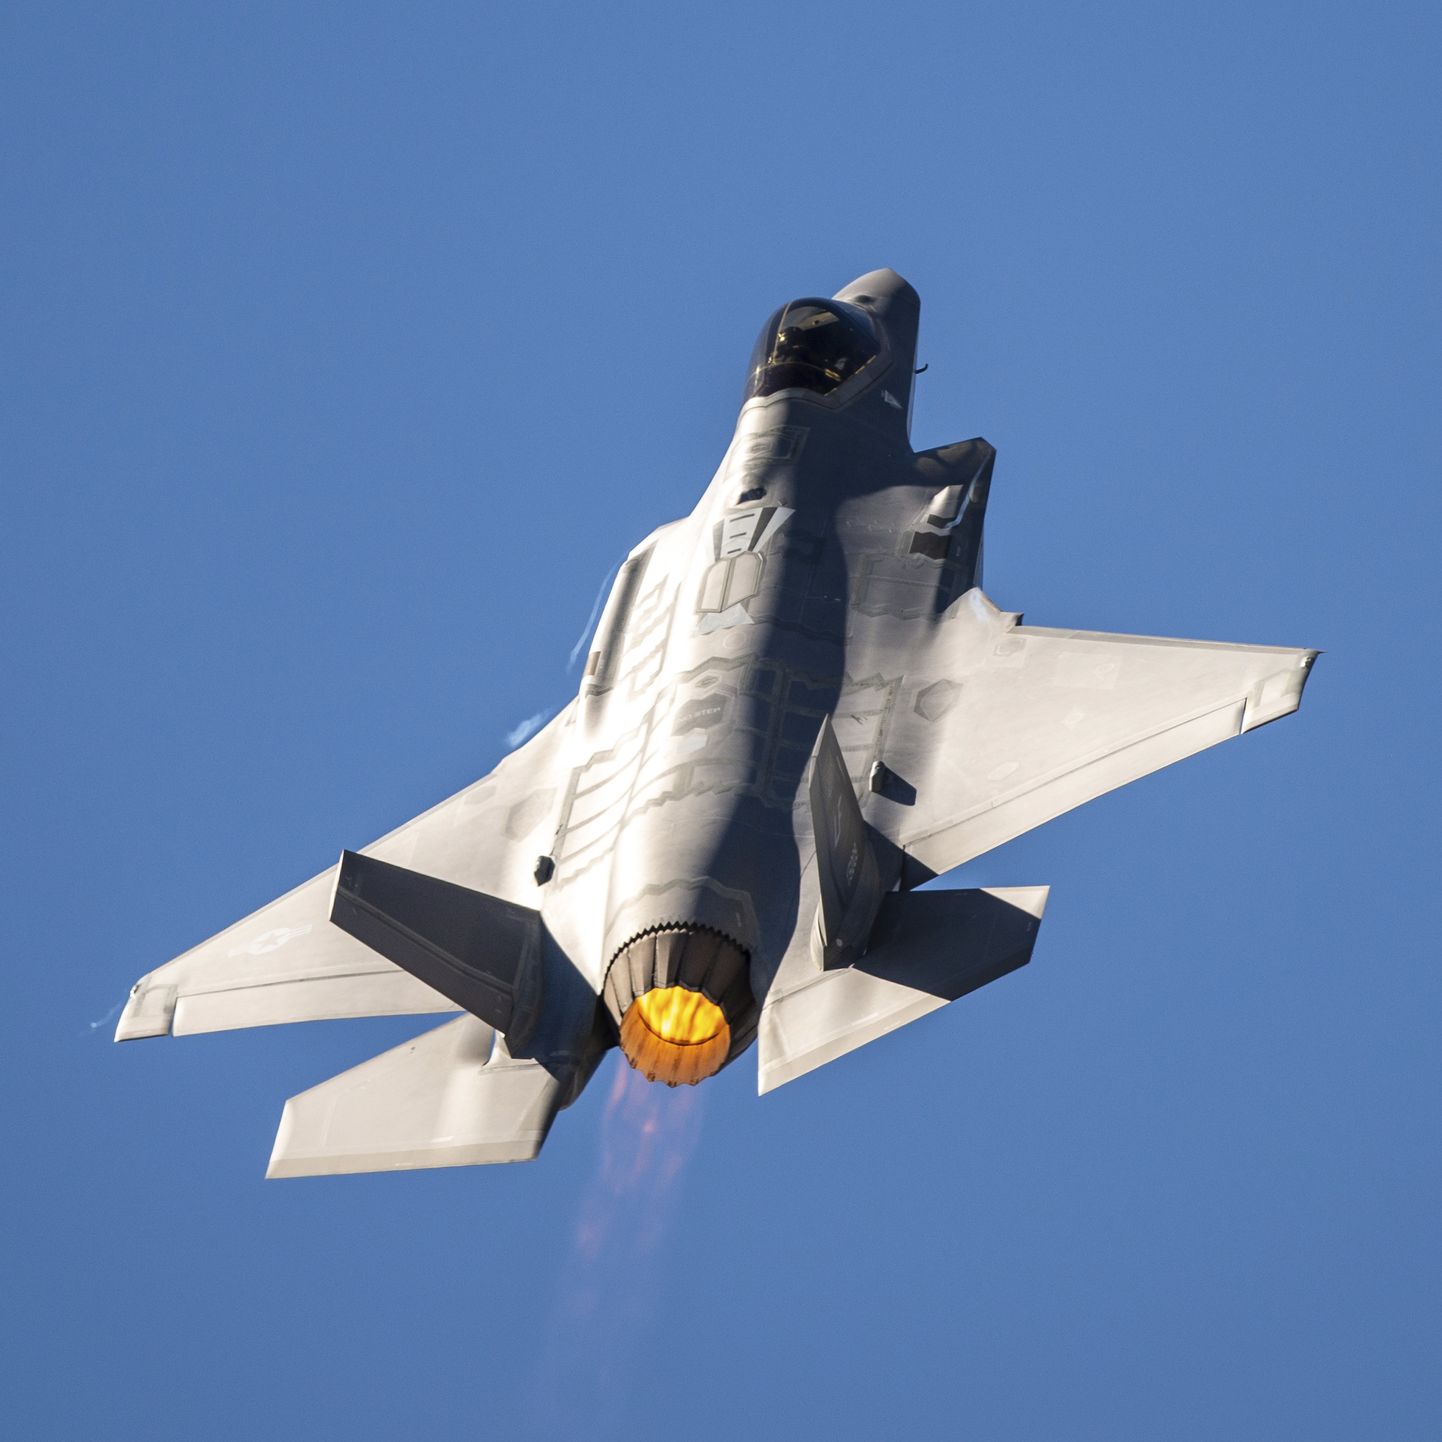 USA varghävitaja F-35 23. märtsil Tucsonis Arizona lennundusmessi raames lendu tegemas.